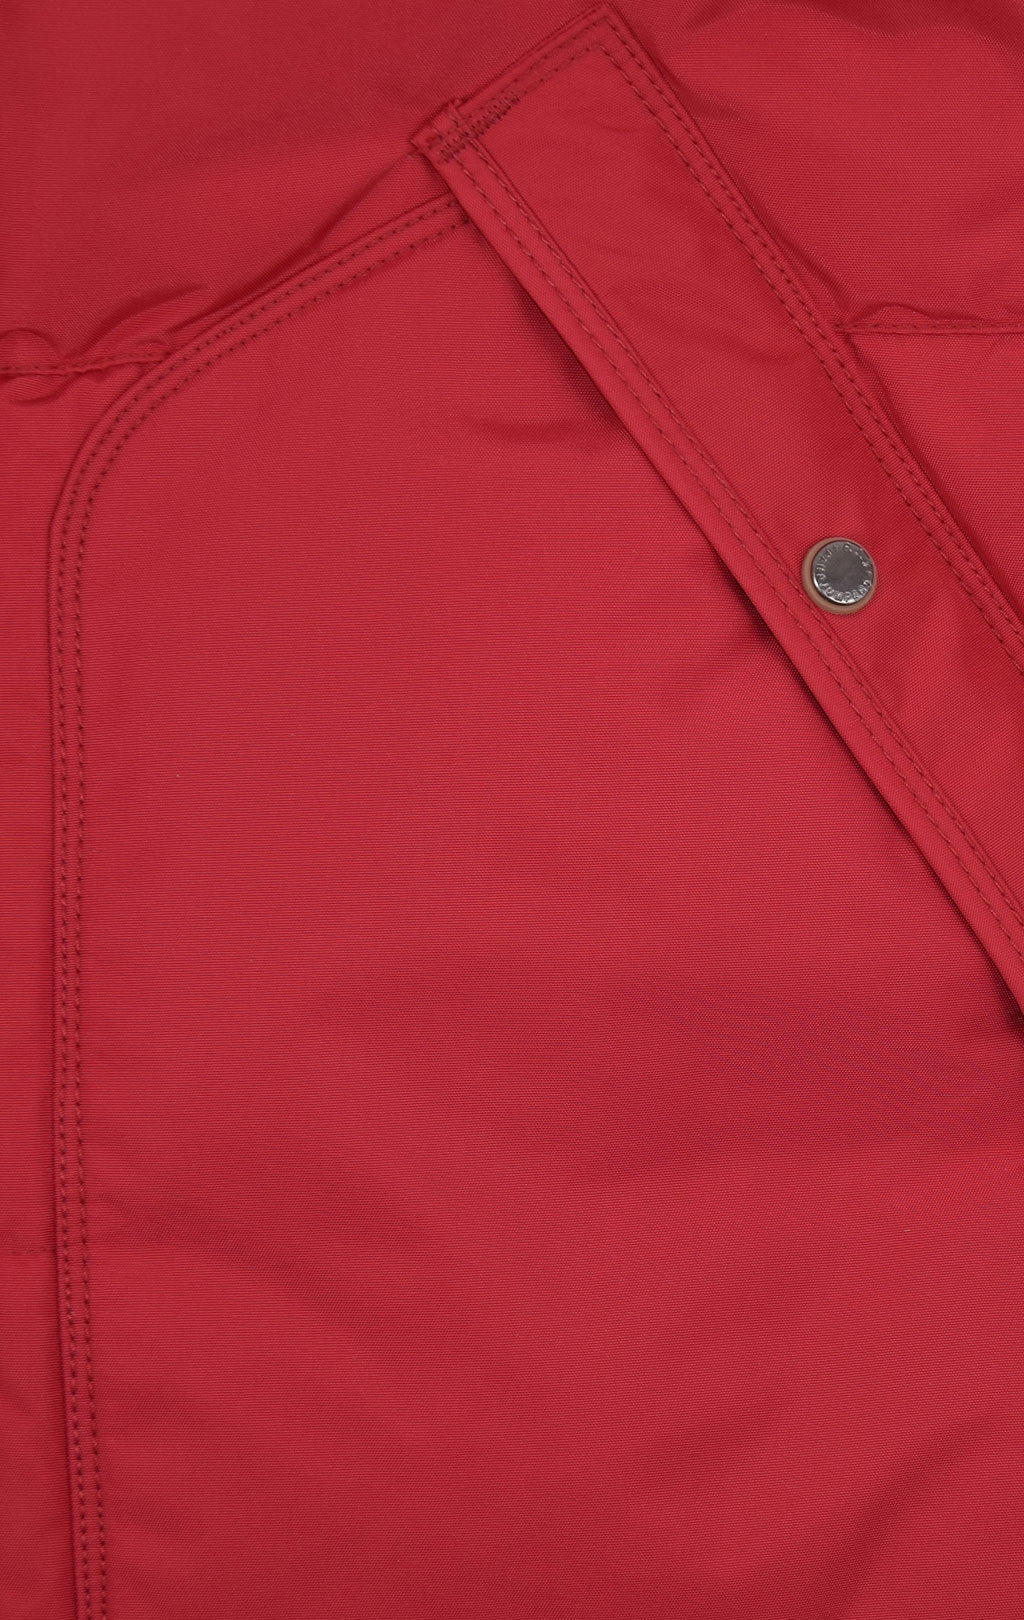 Женская куртка-пуховик PARAJUMPERS LONG BEAR scarlet 